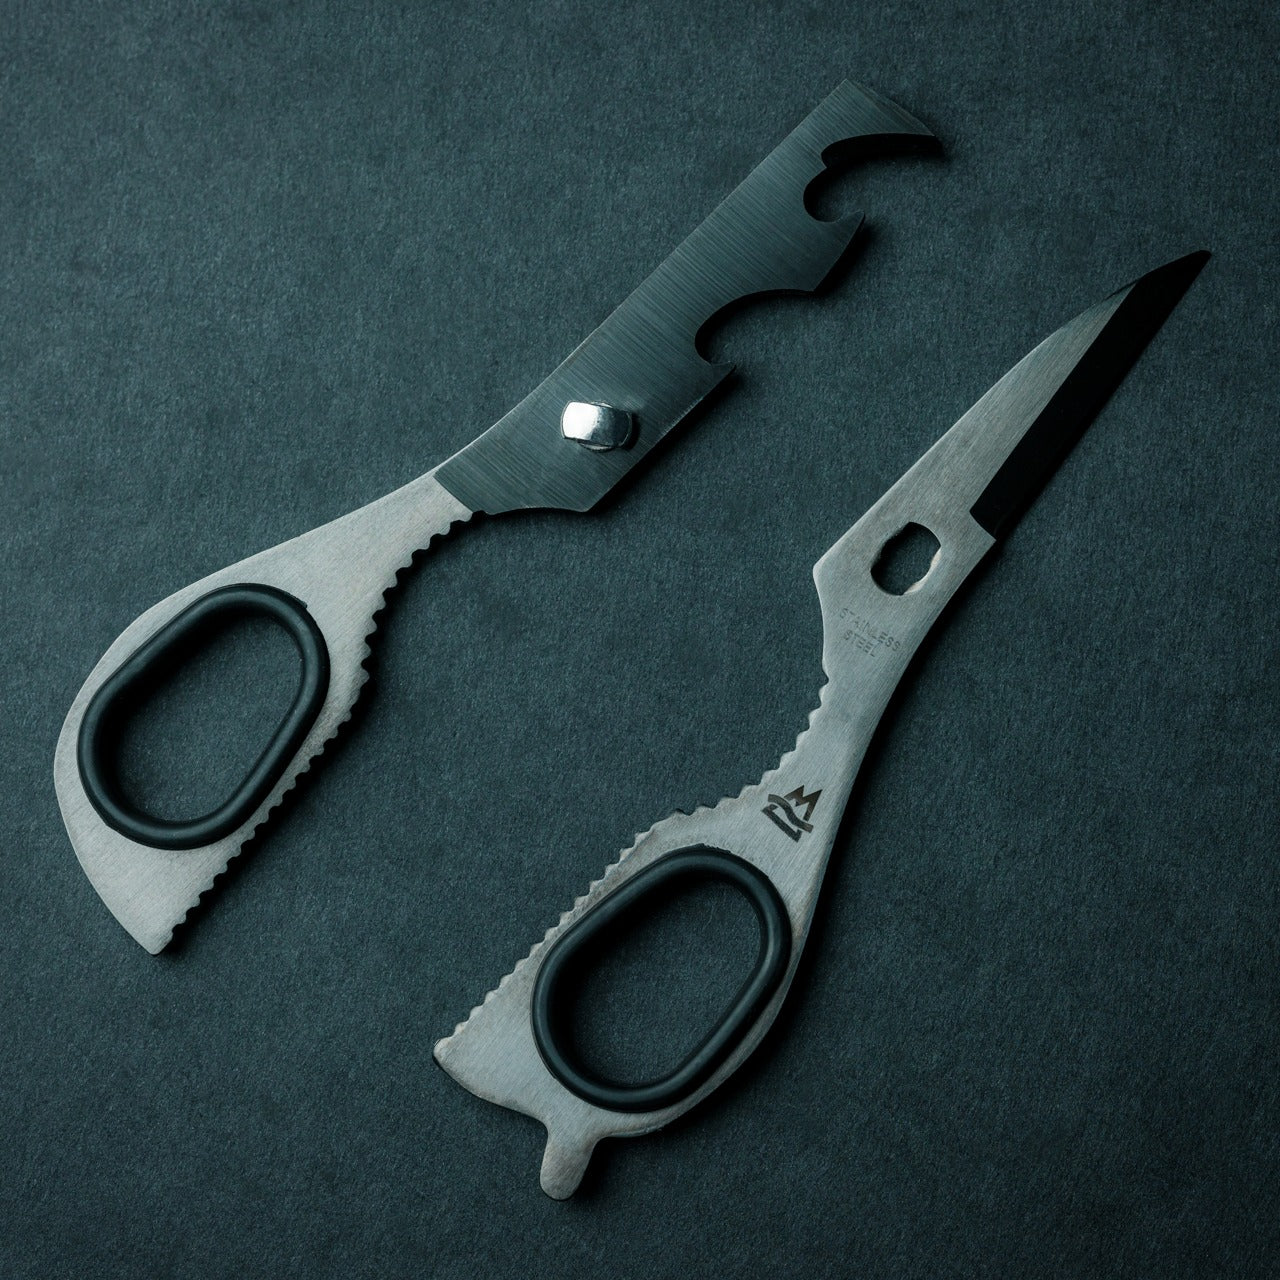 Durasharp Cutworks 8” Scissors